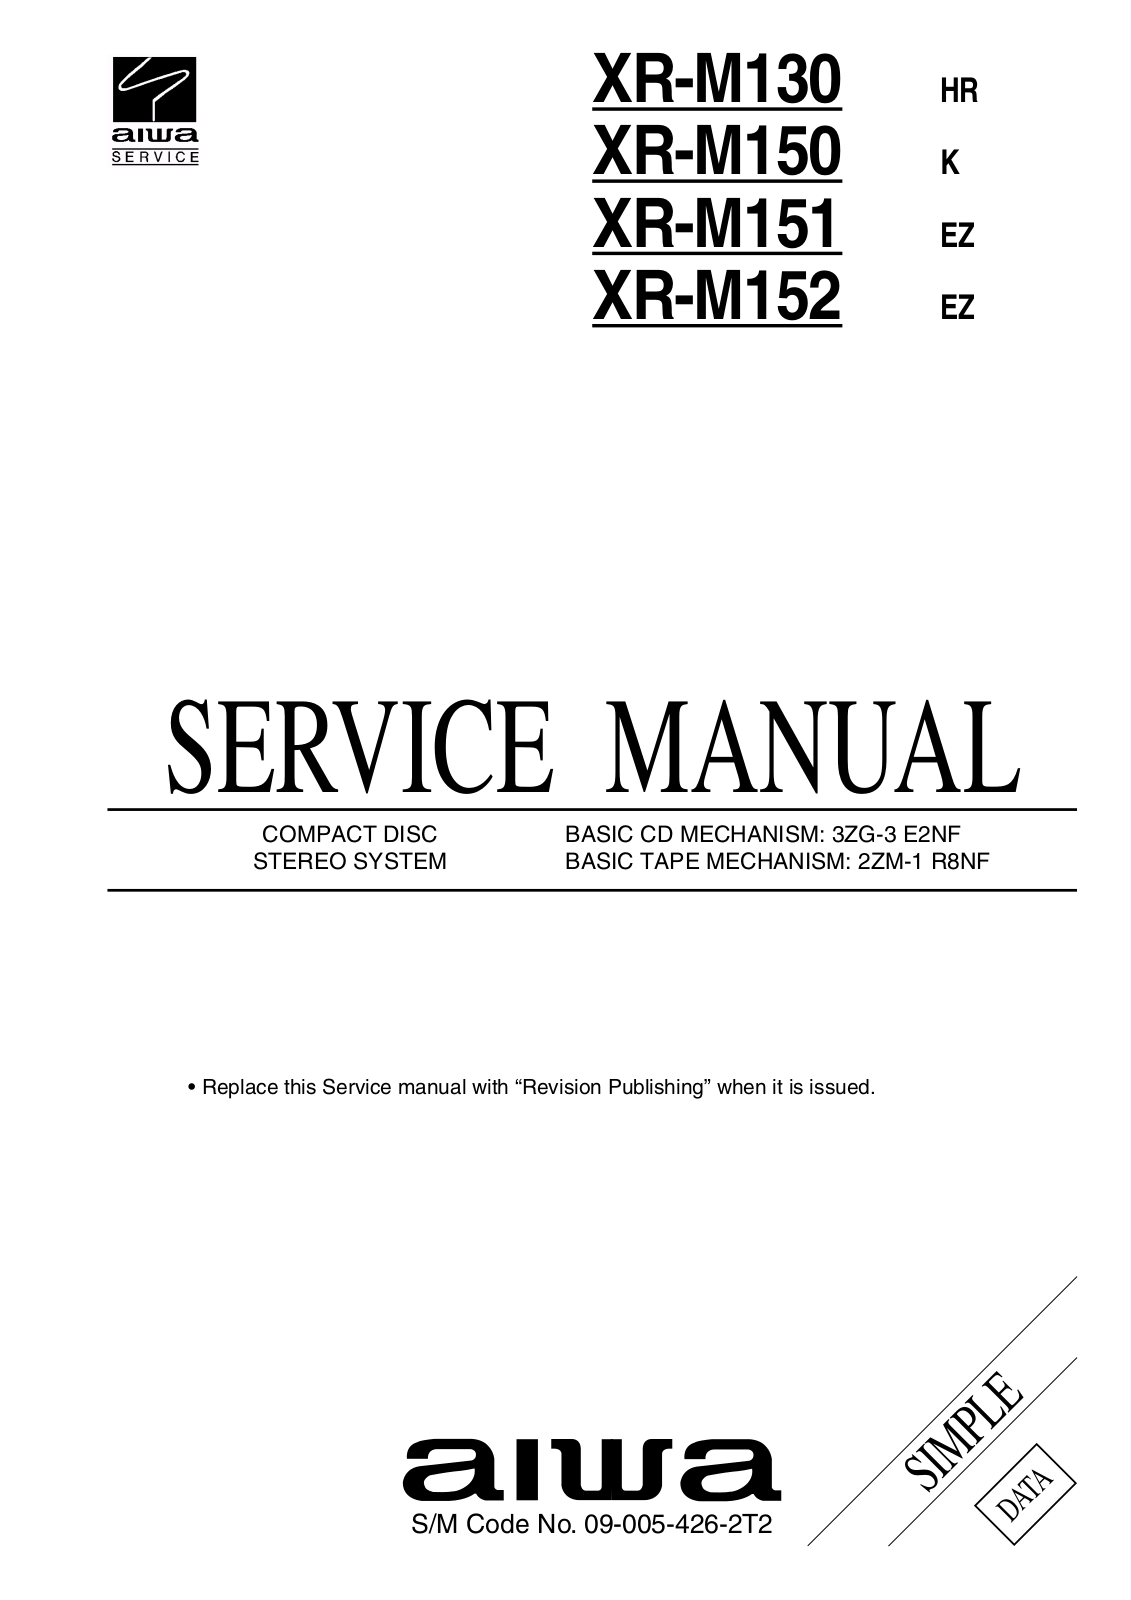 Aiwa XR-M130, XR-M150, XR-M151, XR-M152 Service Manual